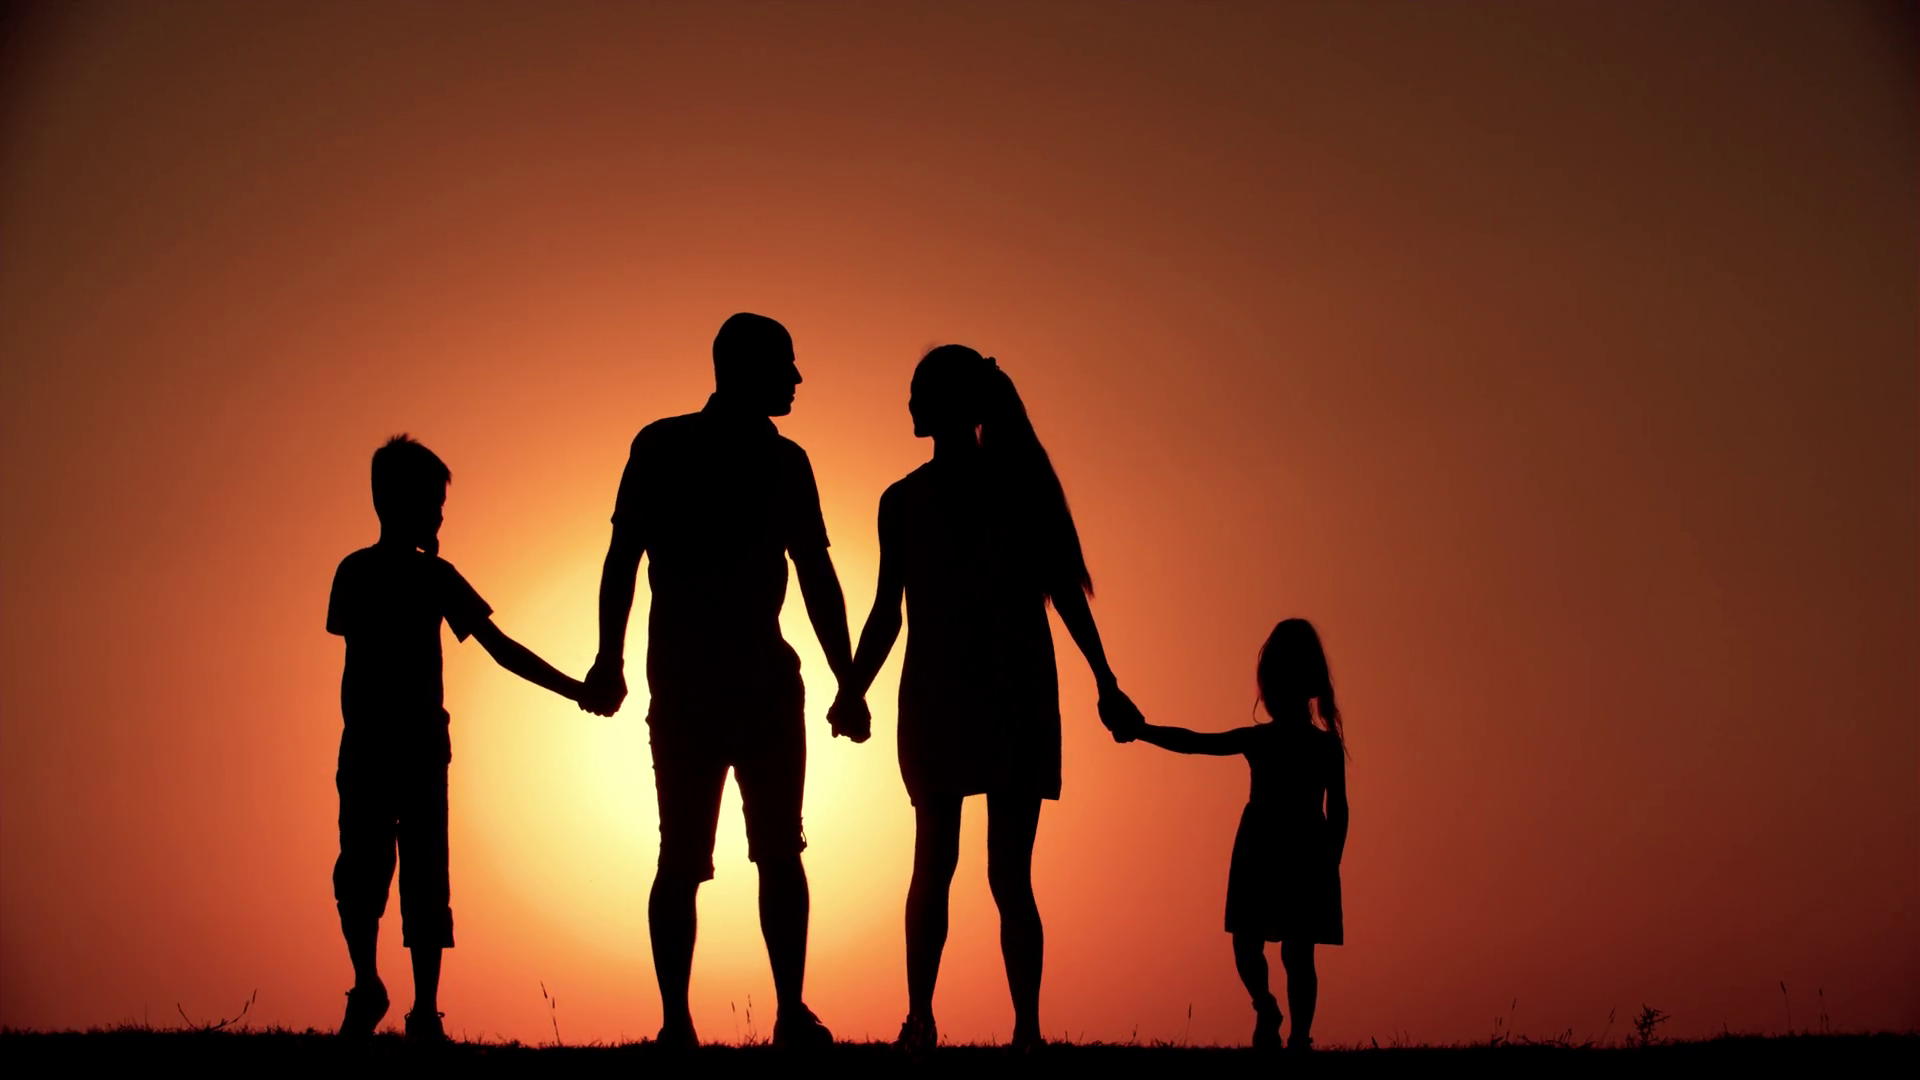 Gia đình là nơi chứa chan tình yêu thương, không có gì tuyệt vời hơn khi được chia sẻ những khoảnh khắc đầm ấm cùng gia đình. Hãy xem hình ảnh liên quan để thấy được sức mạnh và ý nghĩa của gia đình trong cuộc sống.